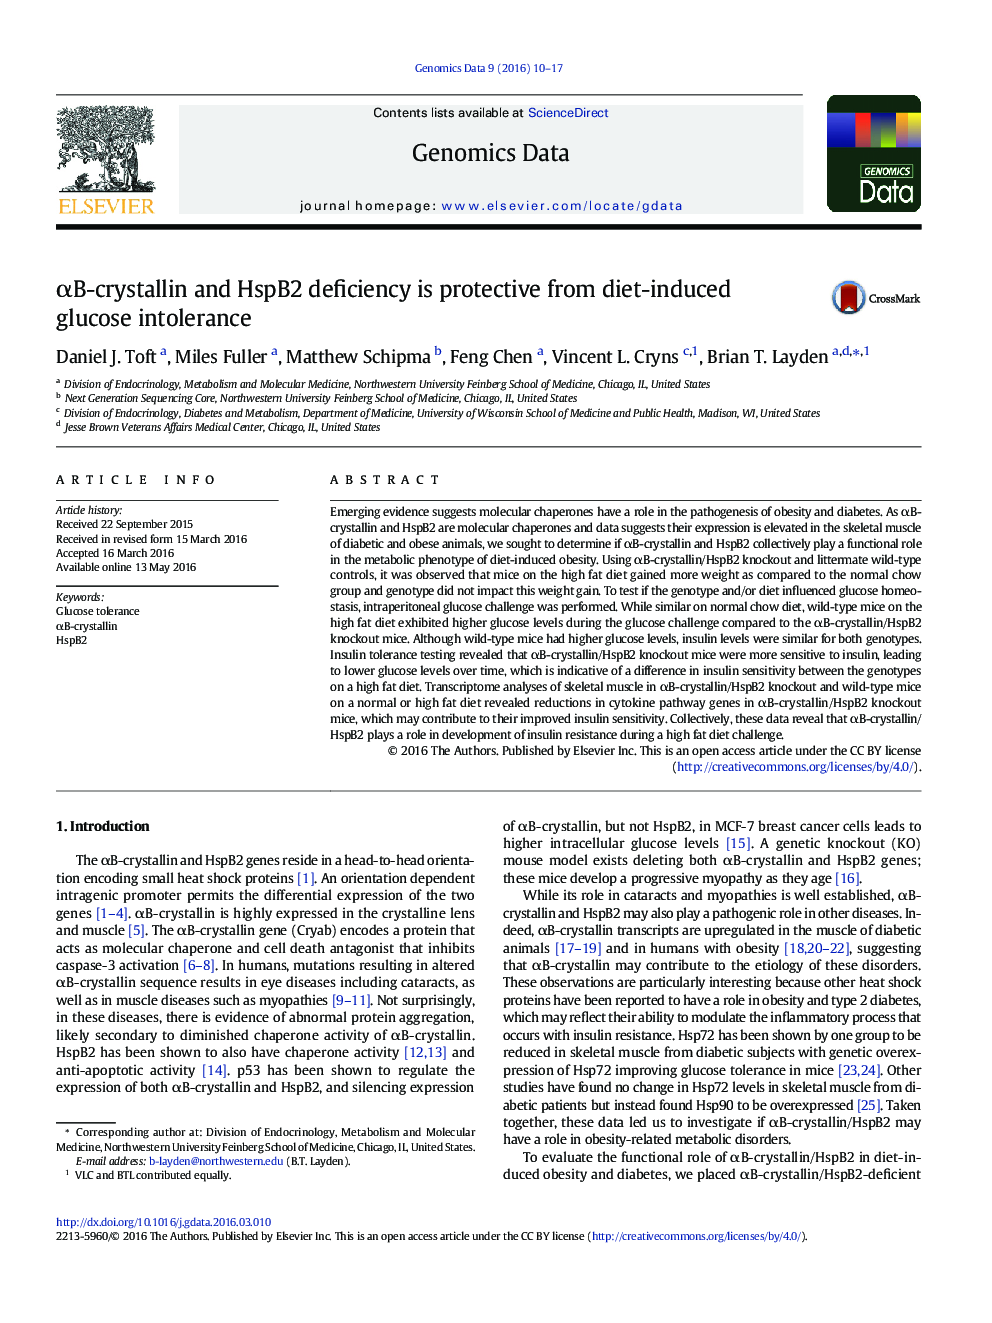 αB-crystallin and HspB2 deficiency is protective from diet-induced glucose intolerance